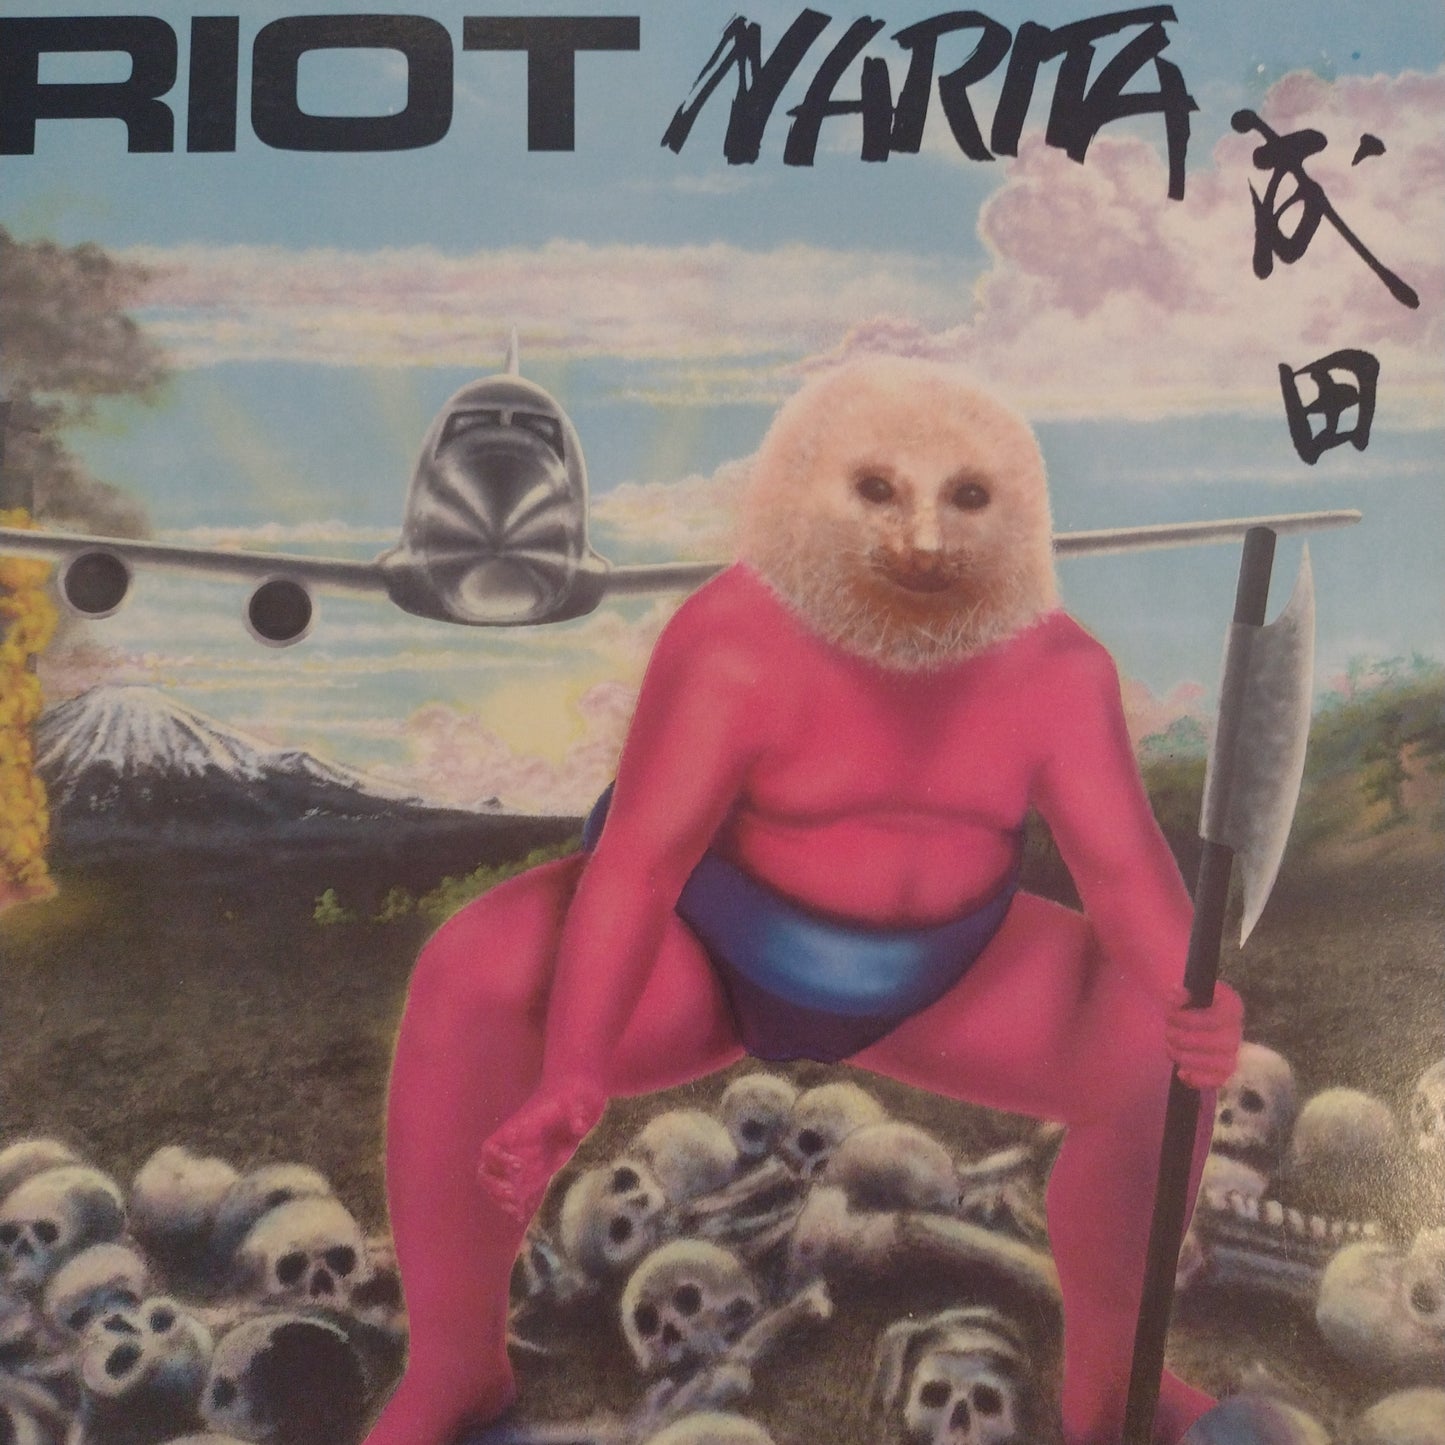 Narita lp by Riot